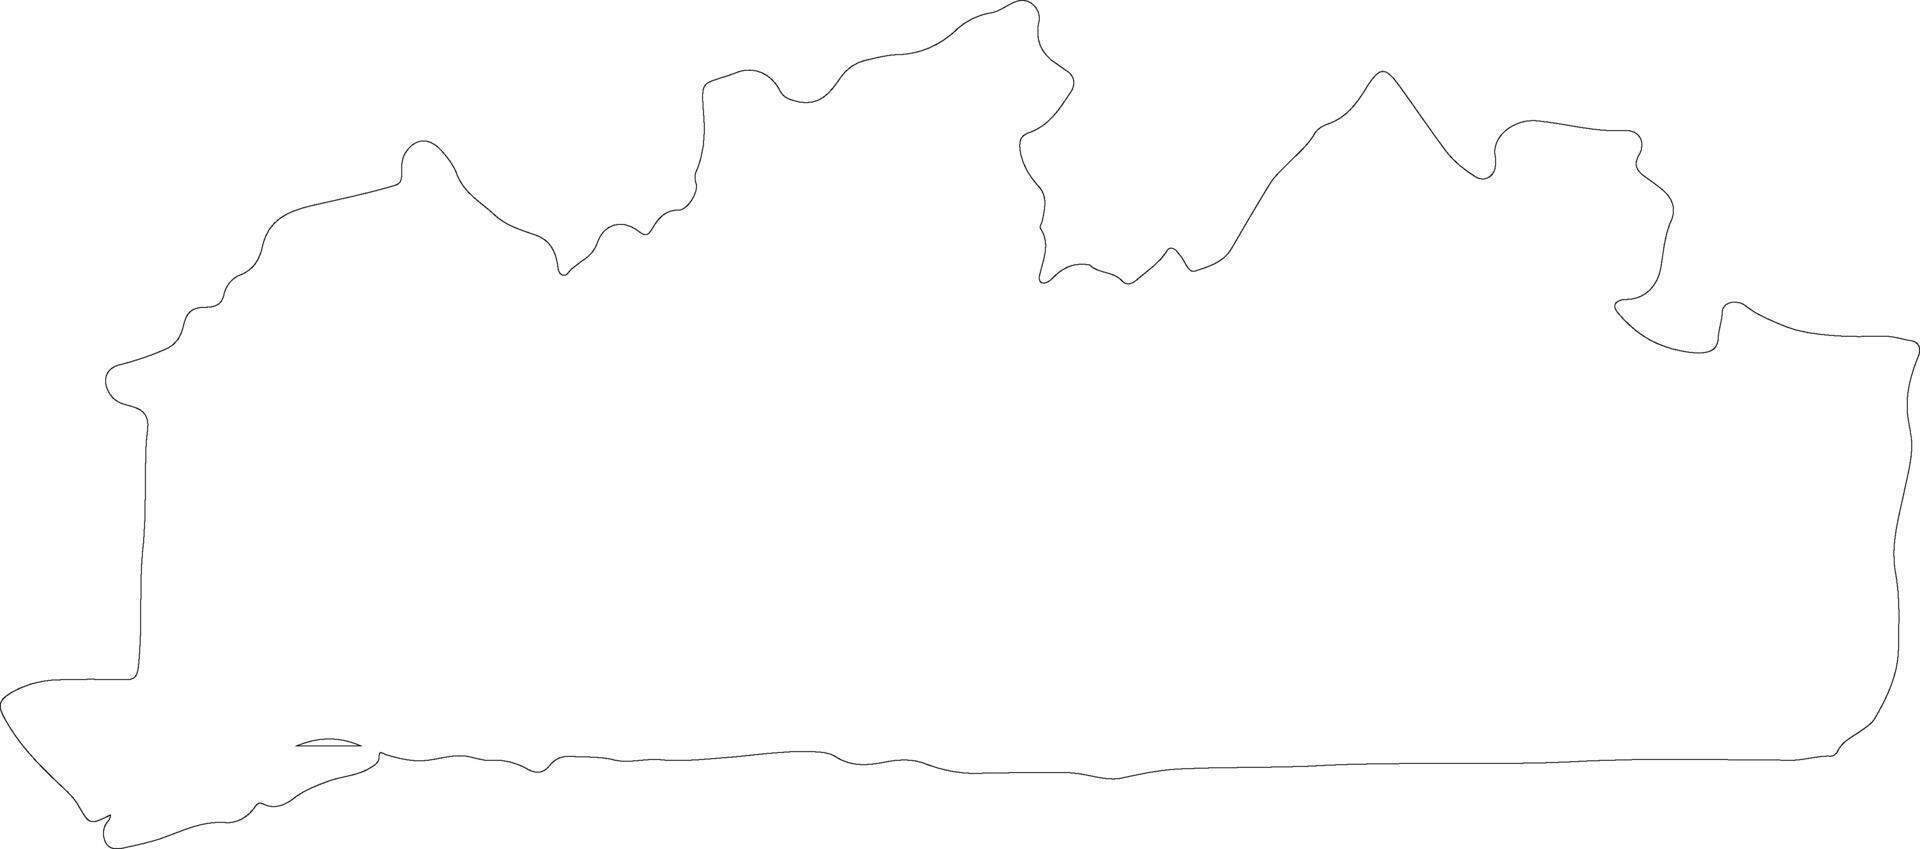 bas-kongo demokratisk republik av de kongo översikt Karta vektor